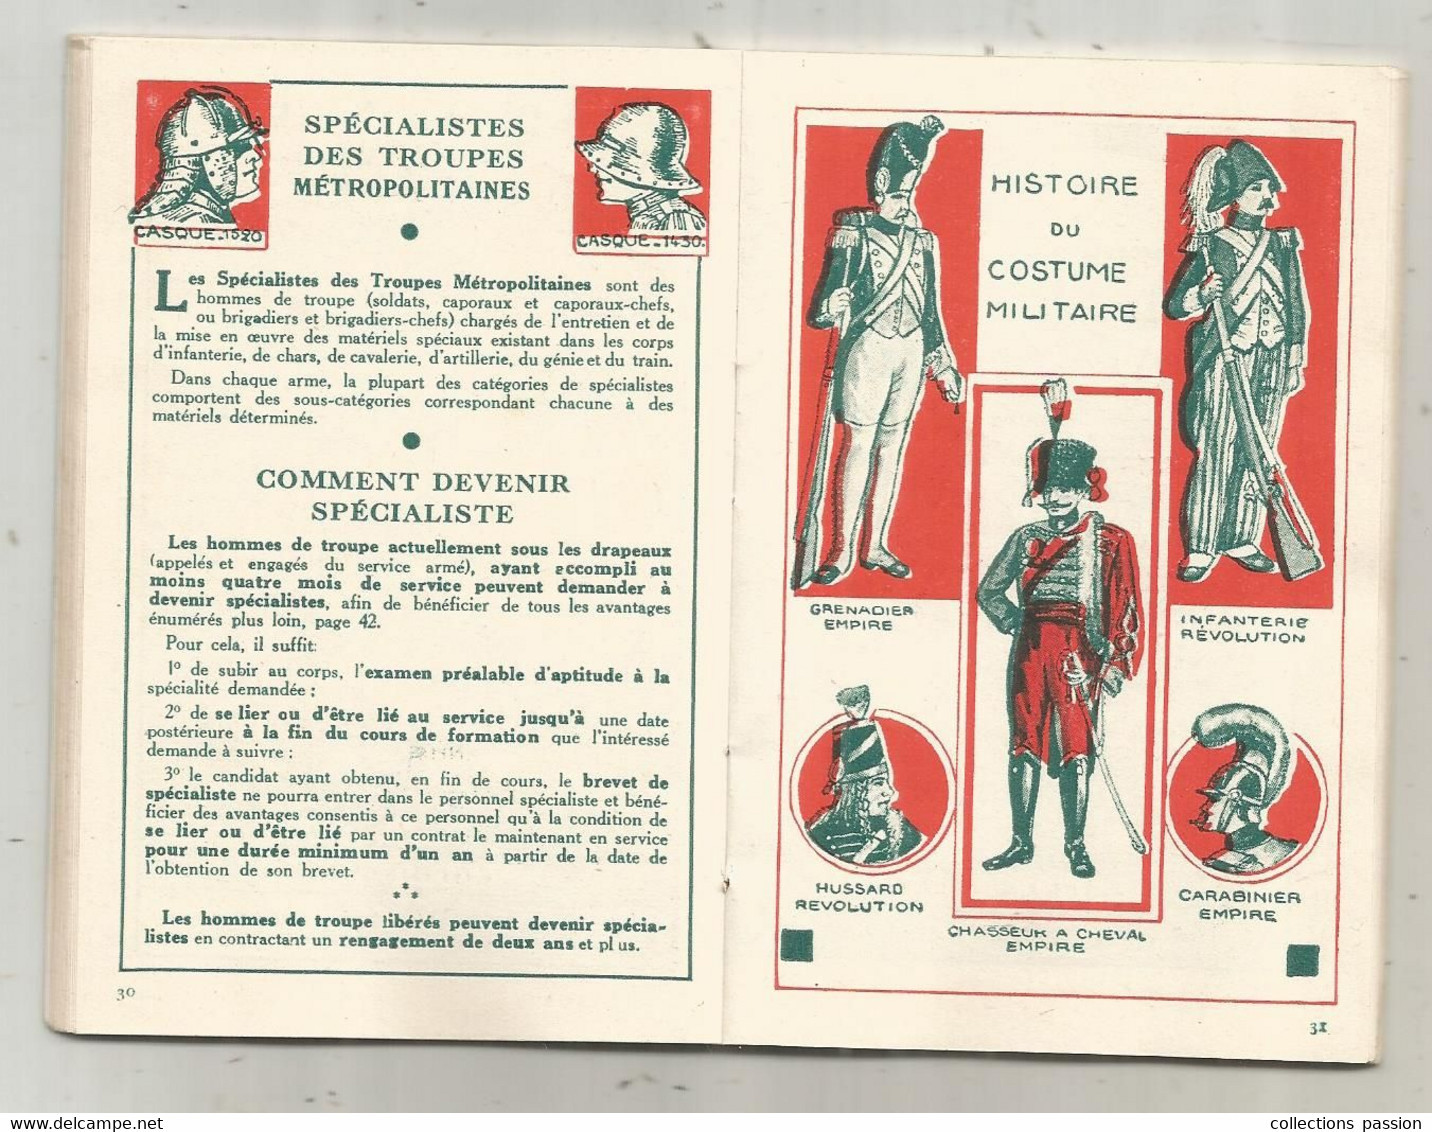 MILITARIA, calendrier du soldat francais, oct. 1934-avr. 1936 , 60 pages ,cartes...., frais fr 3.35 e